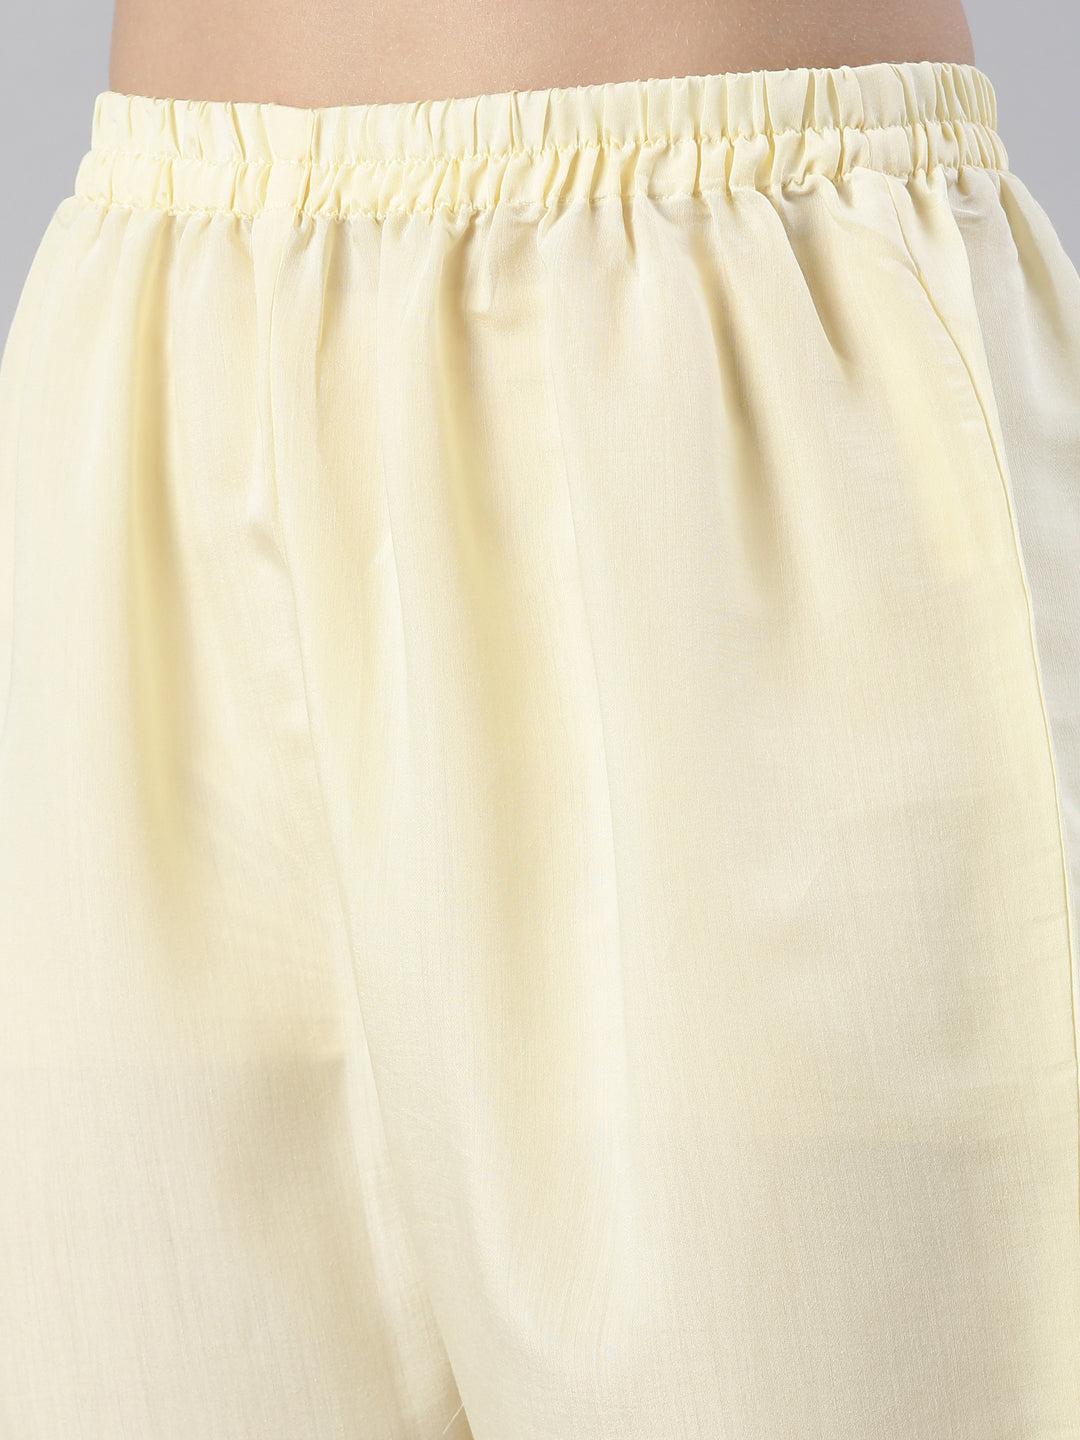 Neerus Women  Lemon Yoke Design Calf Length Kurta And Trousers With Dupatta